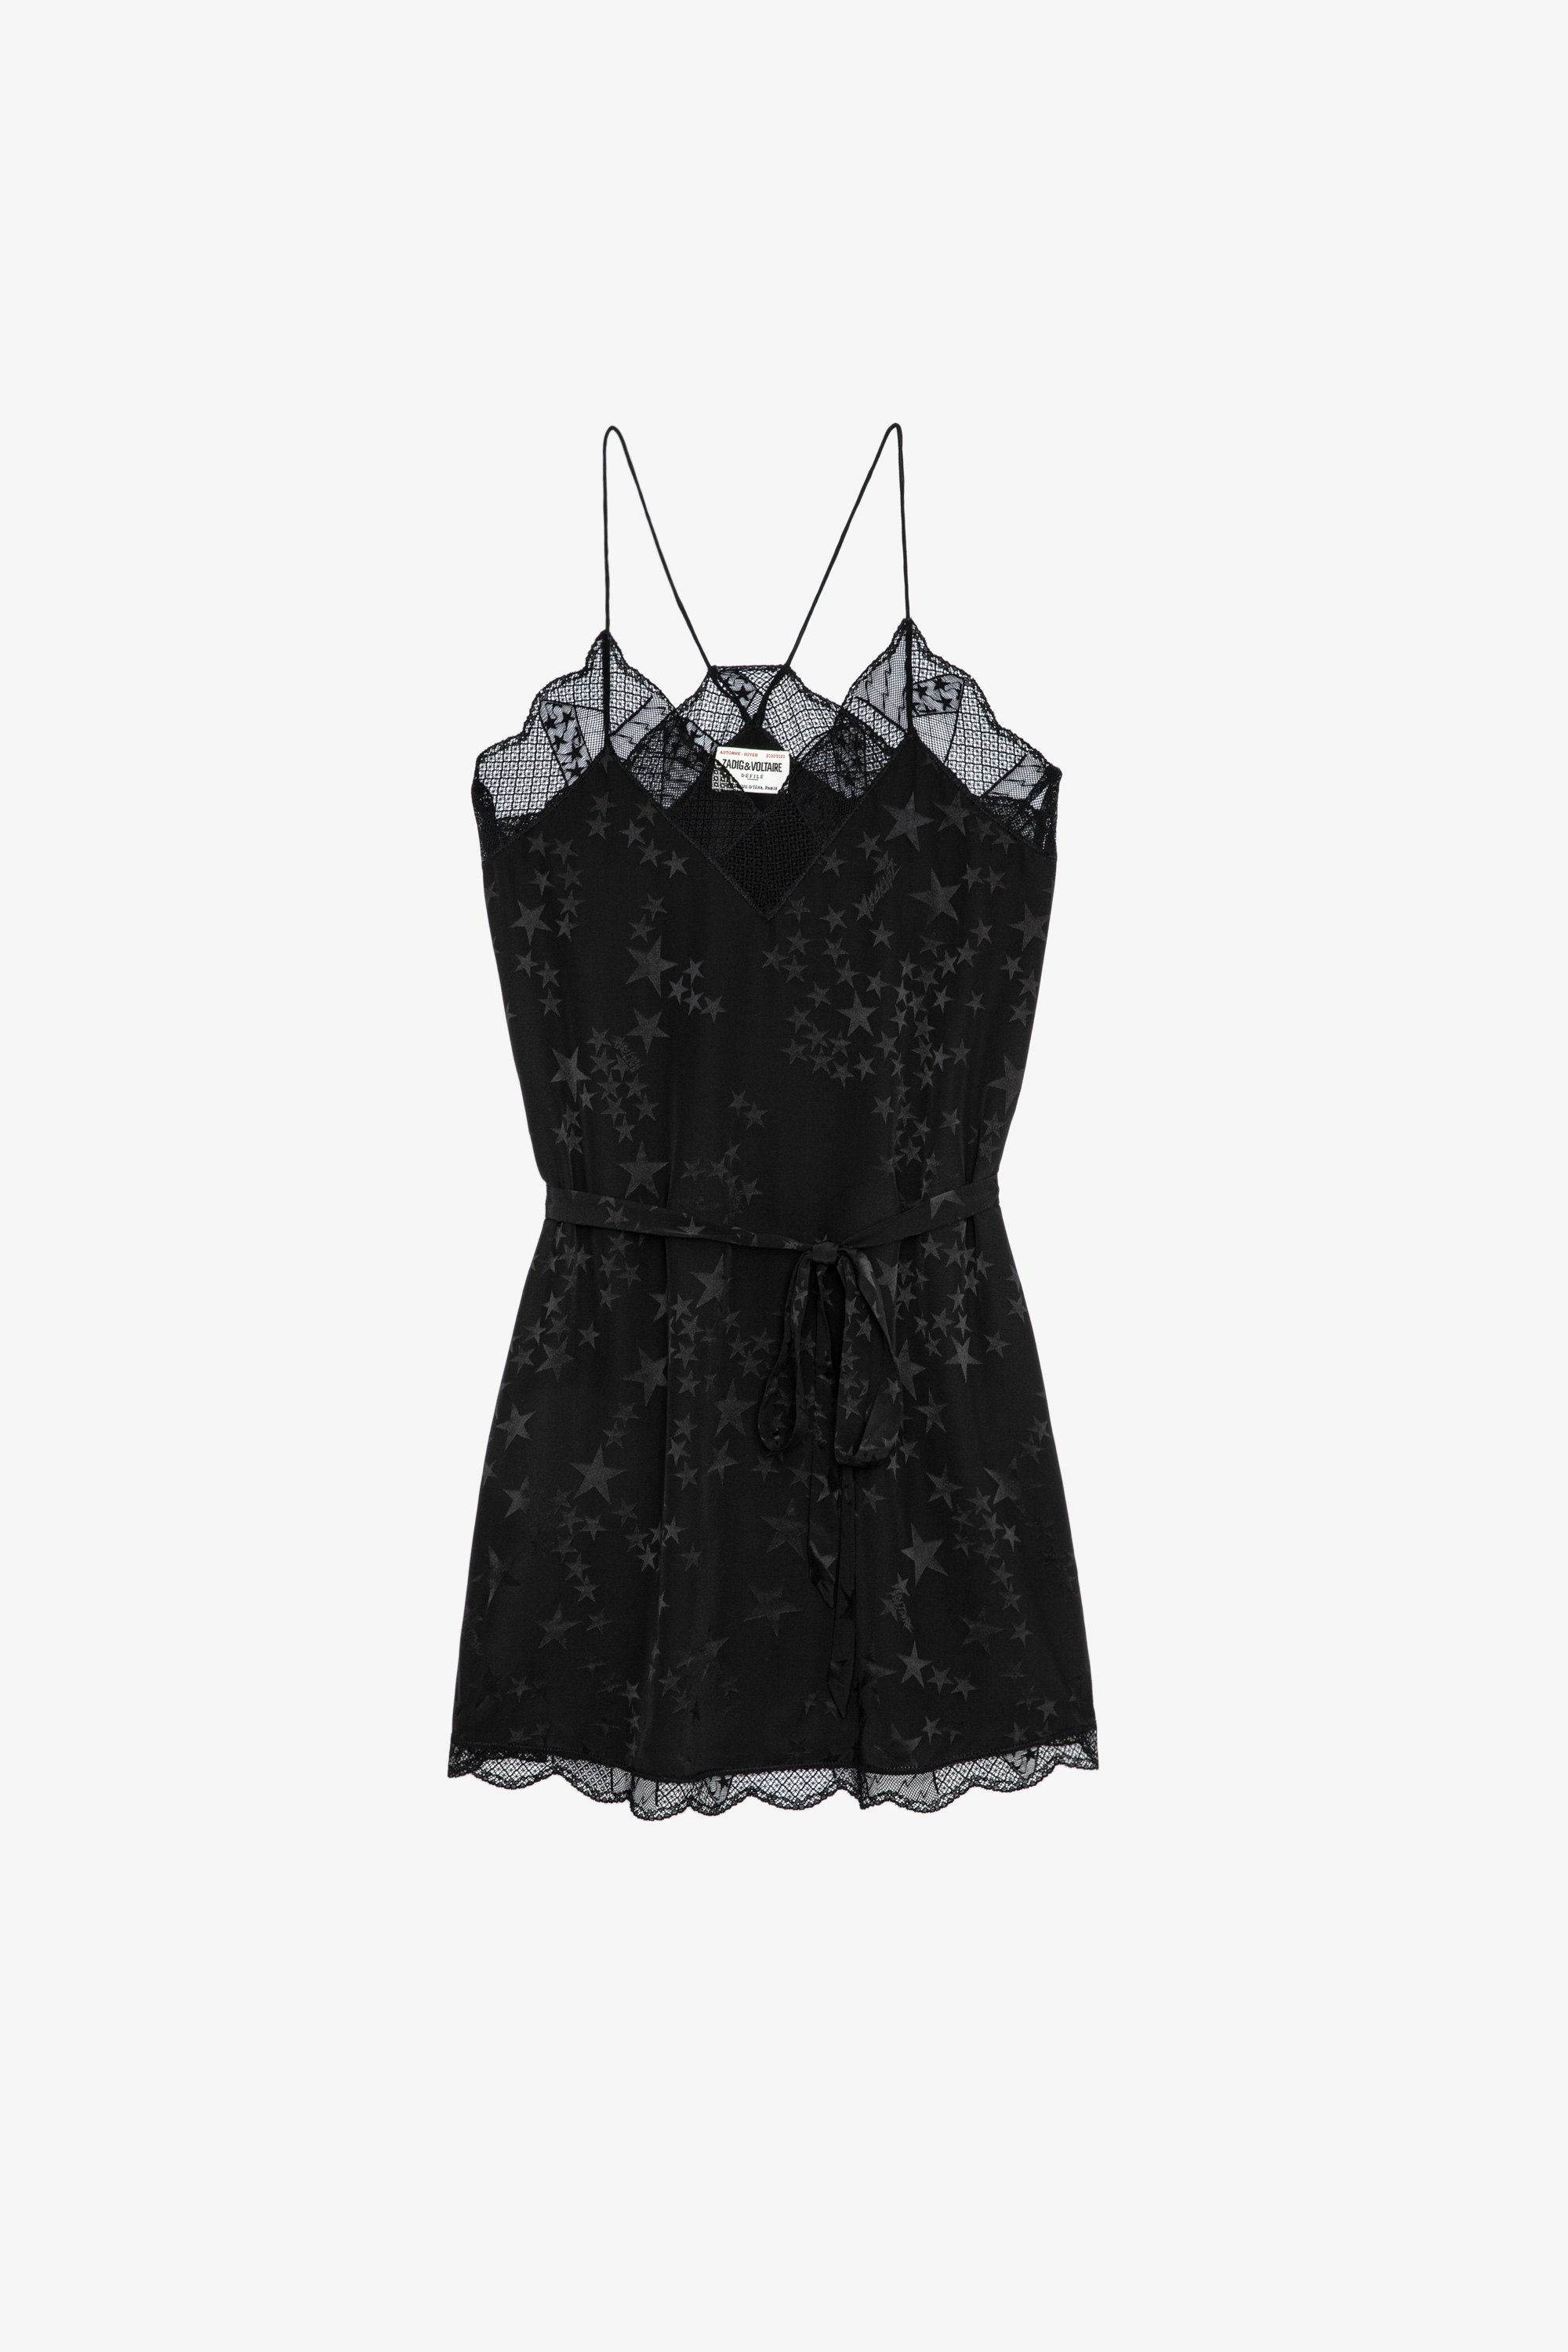 Kleid Ristyz Jac Stars Seide Kurzes Damenkleid aus schwarzer Jacquard-Seide mit Sternenmotiv. Mit Taillengürtel und Spitzenabschlüssen.